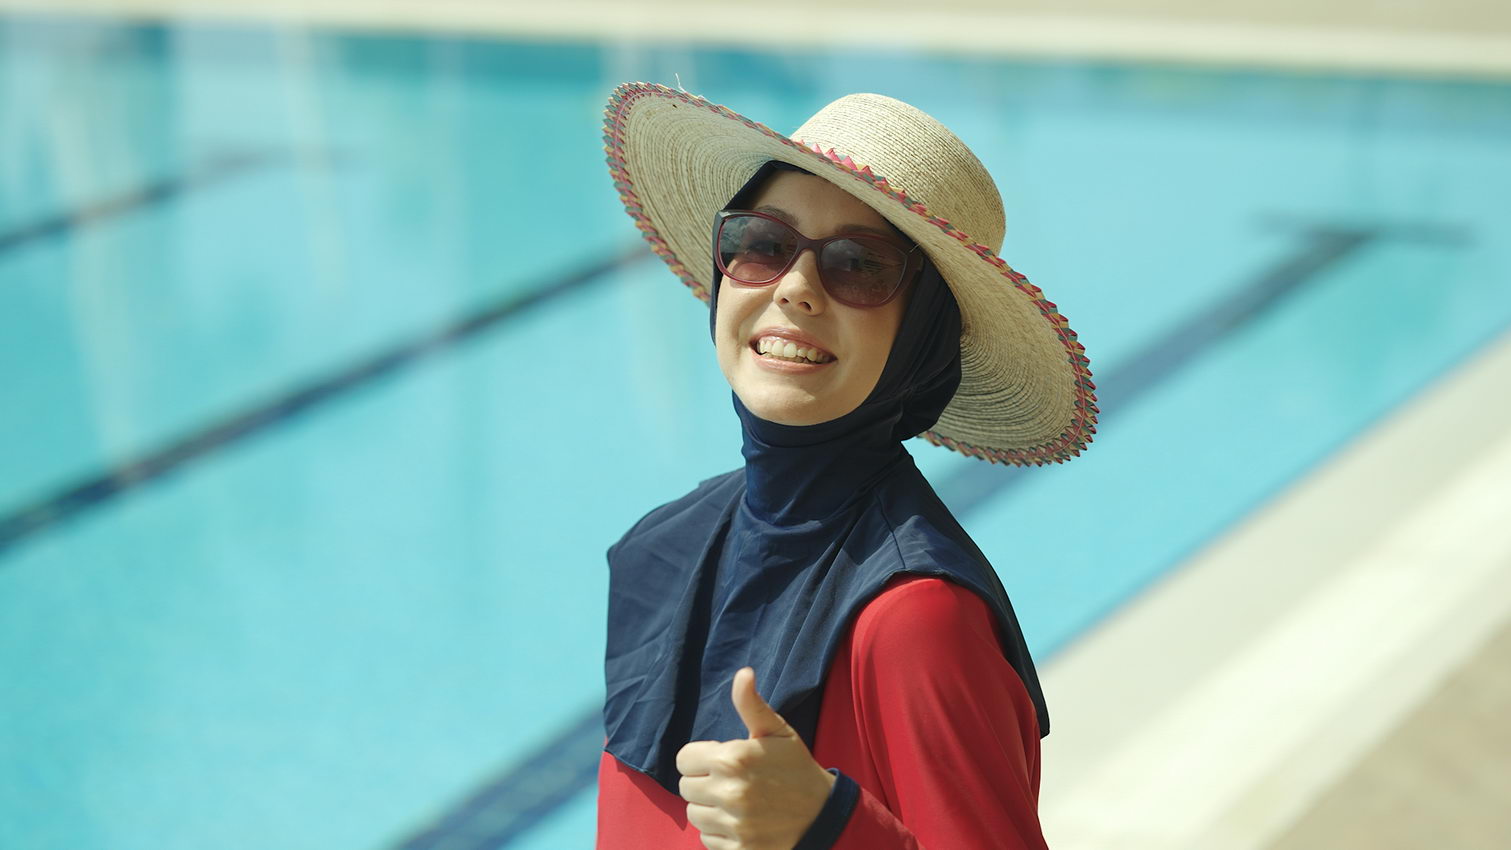 Muslim Woman wearing burkini and hat in a pool